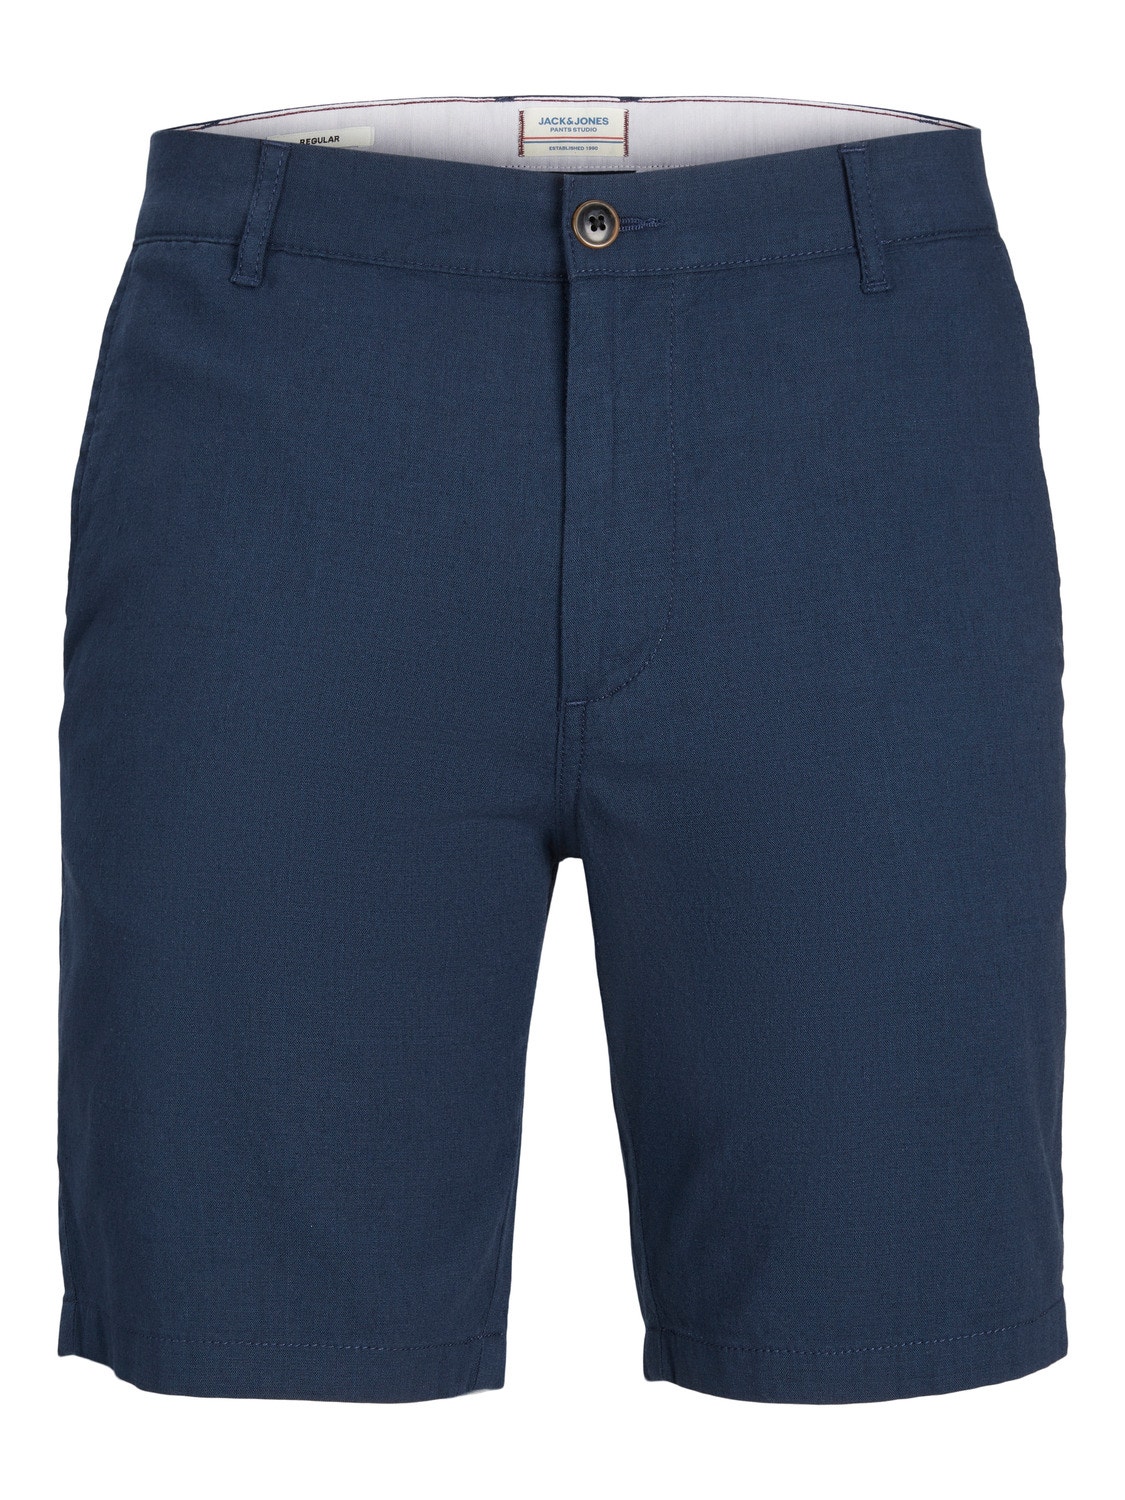 Jack & Jones Regular Fit Chino Shorts Für jungs -Navy Blazer - 12230140